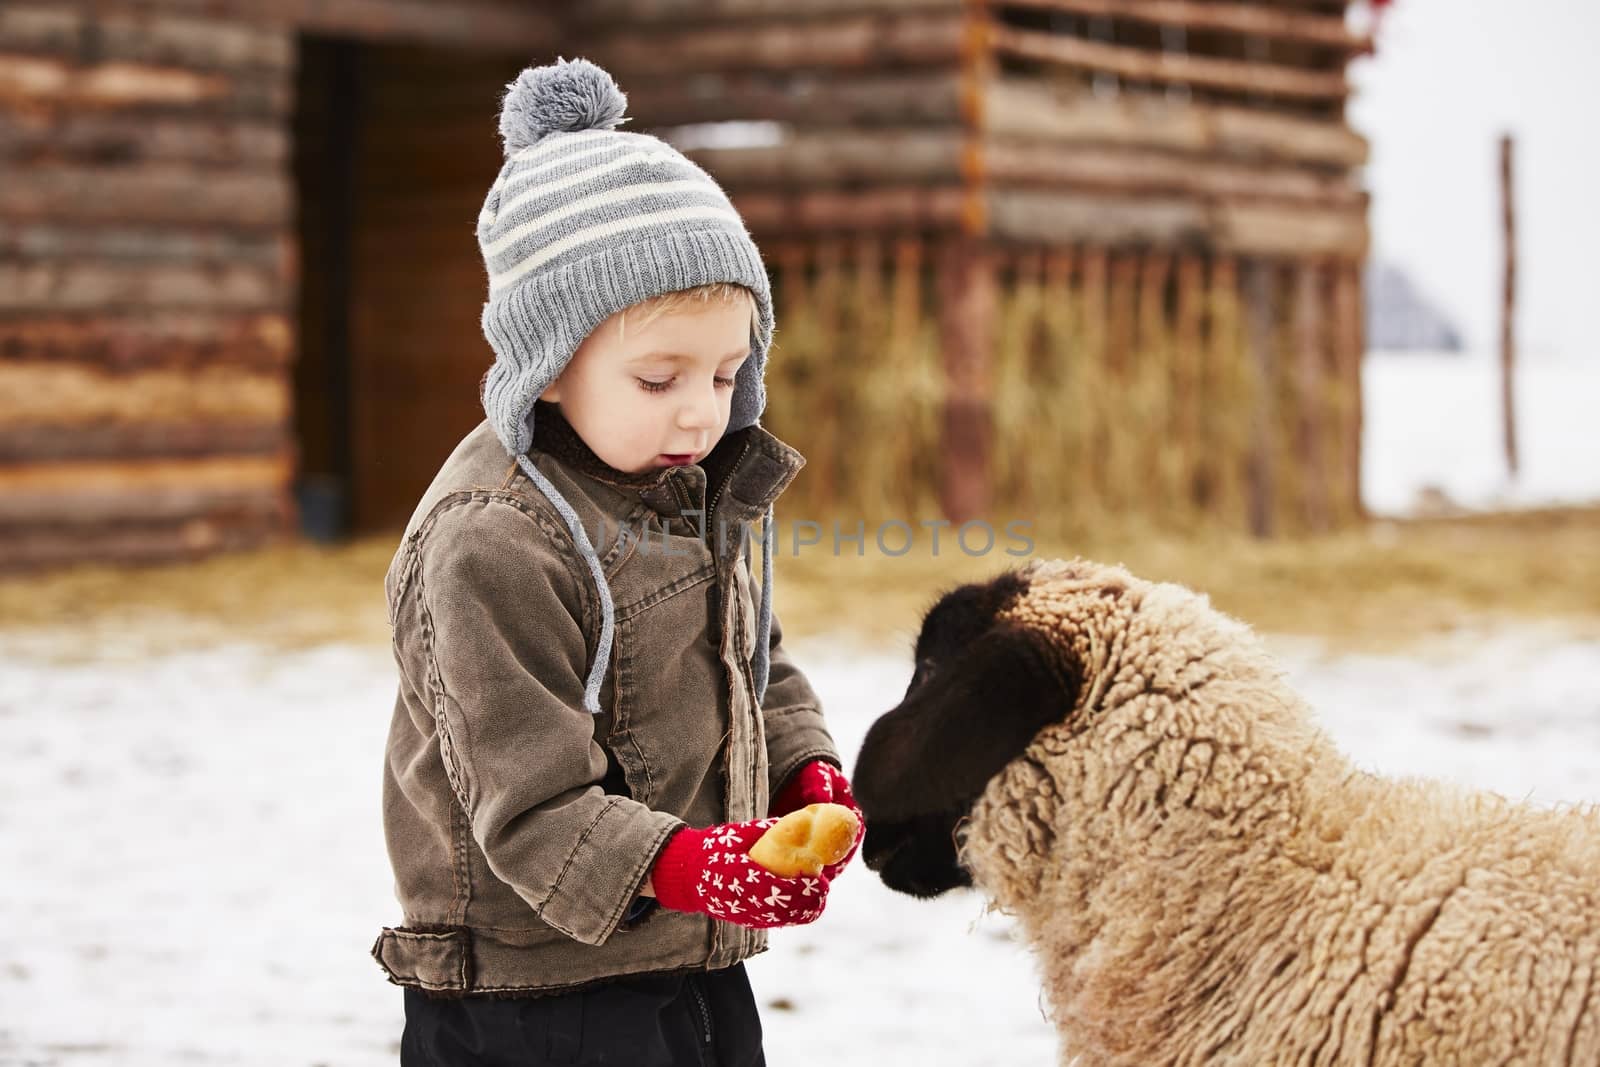 Little boy on the farm in winter